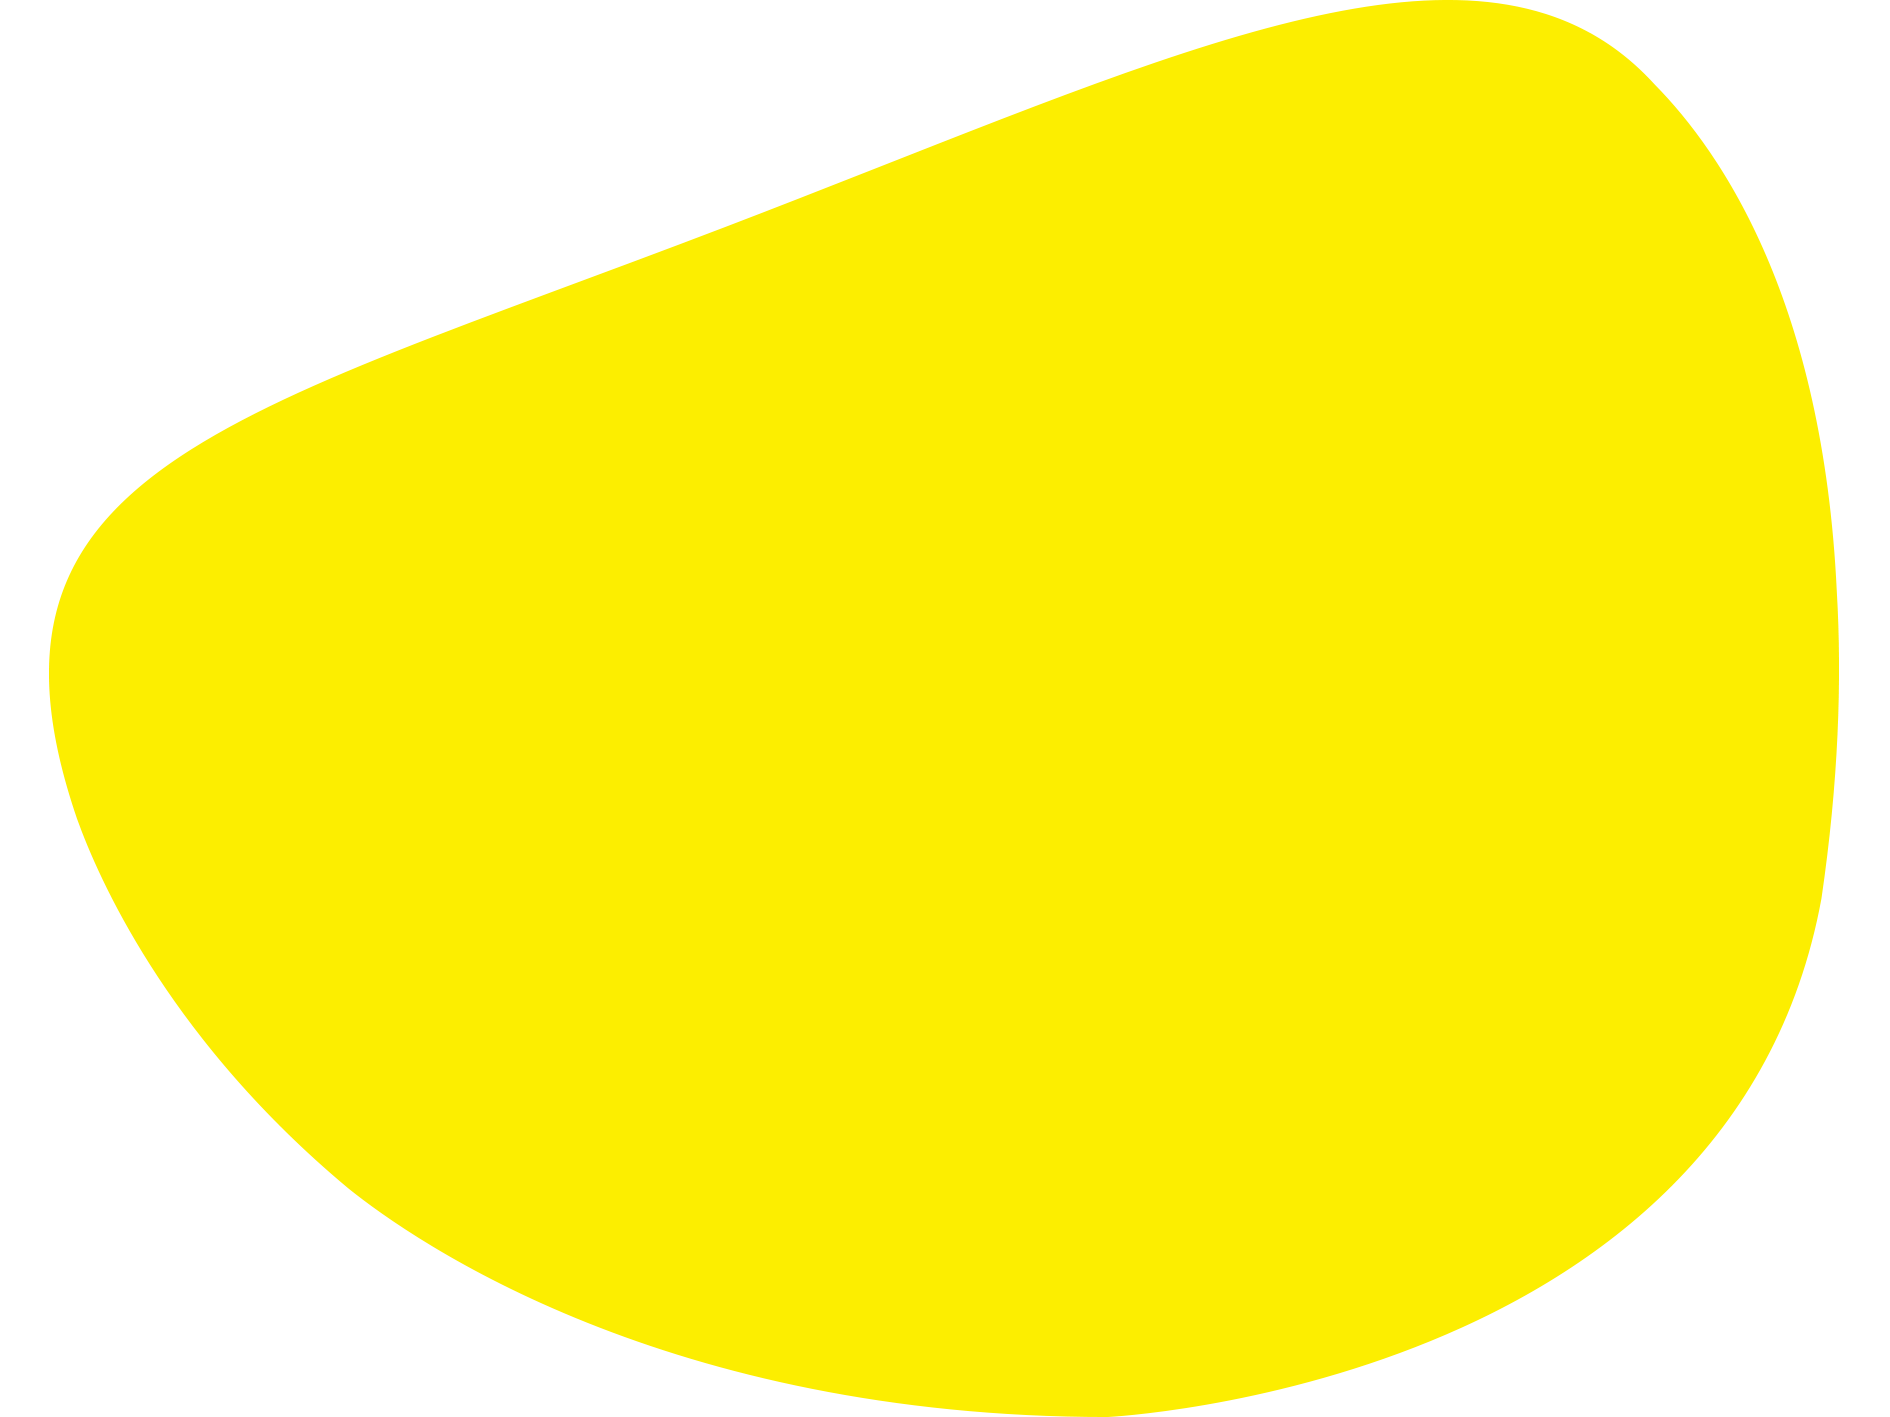 Burbuja amarilla decorativa